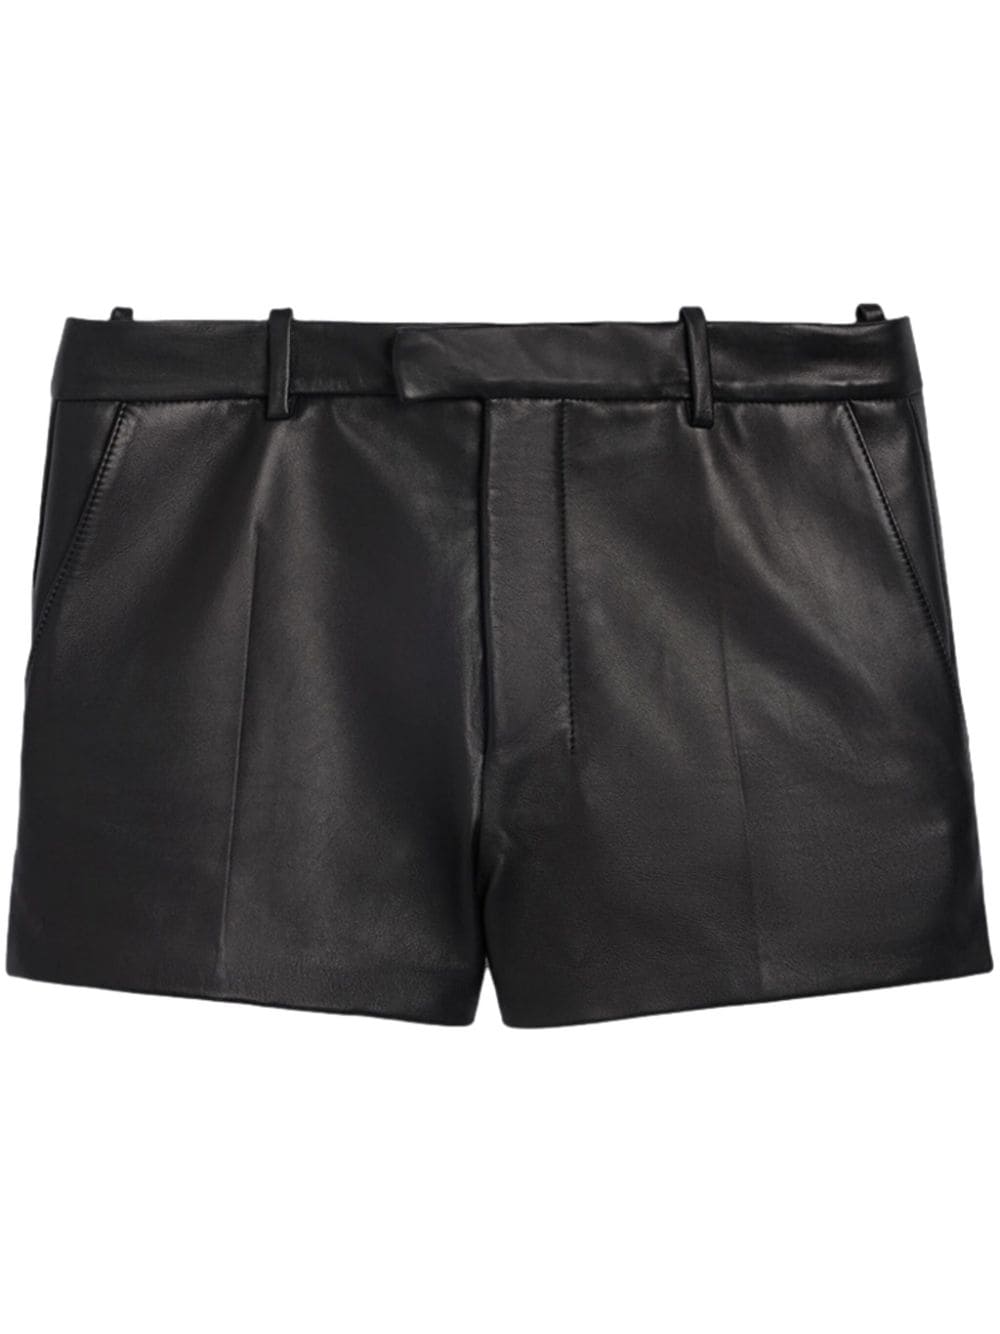 AMI Paris leather tailored shorts - Black von AMI Paris